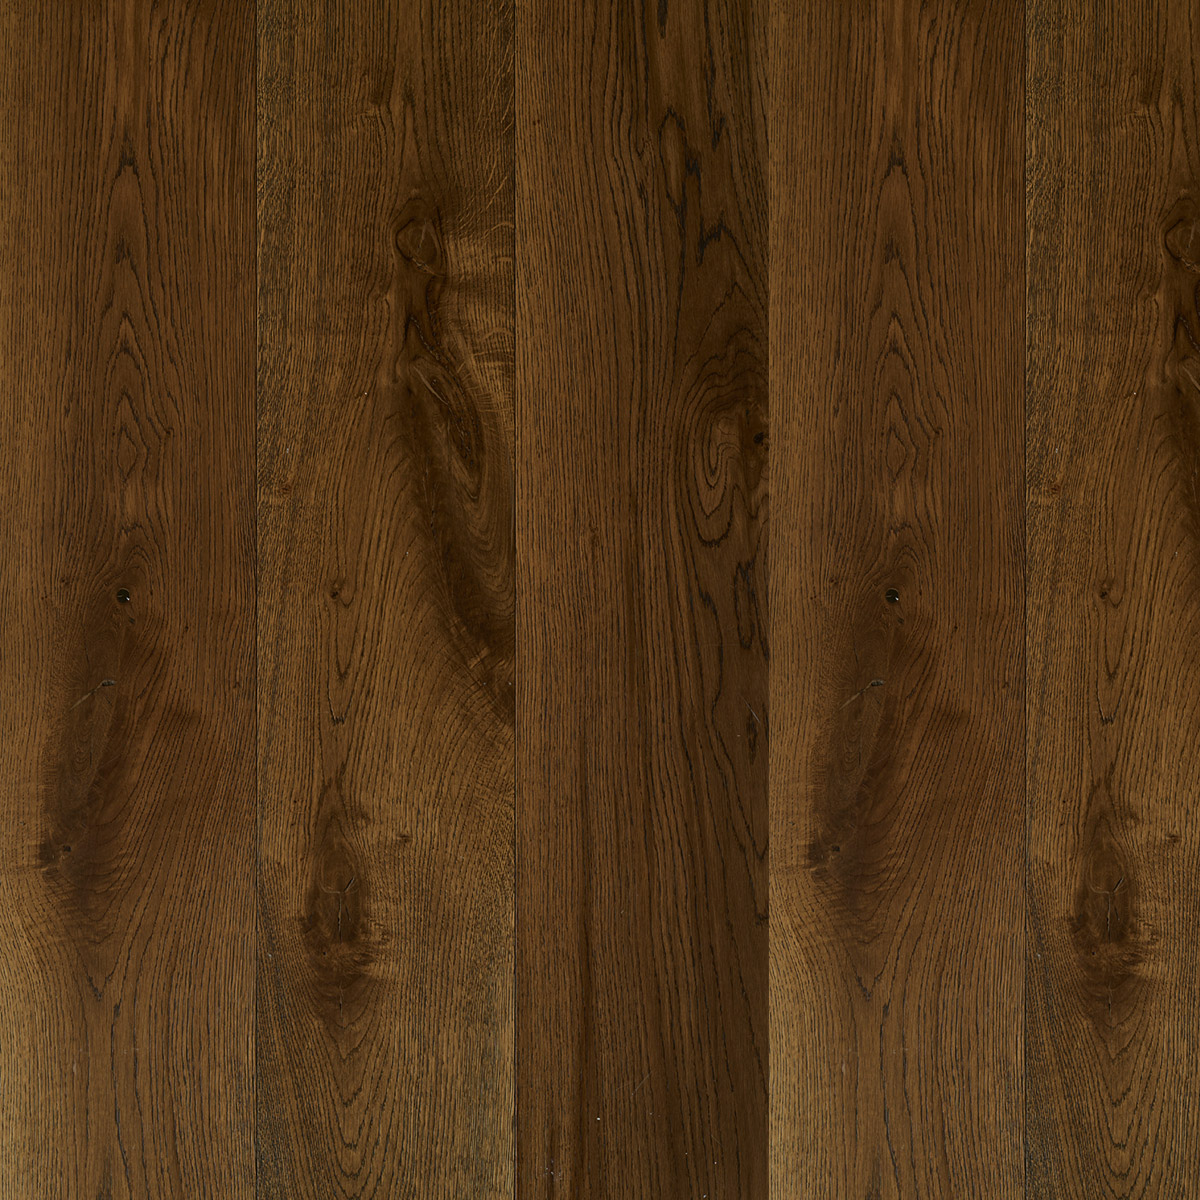 Dark wood floors